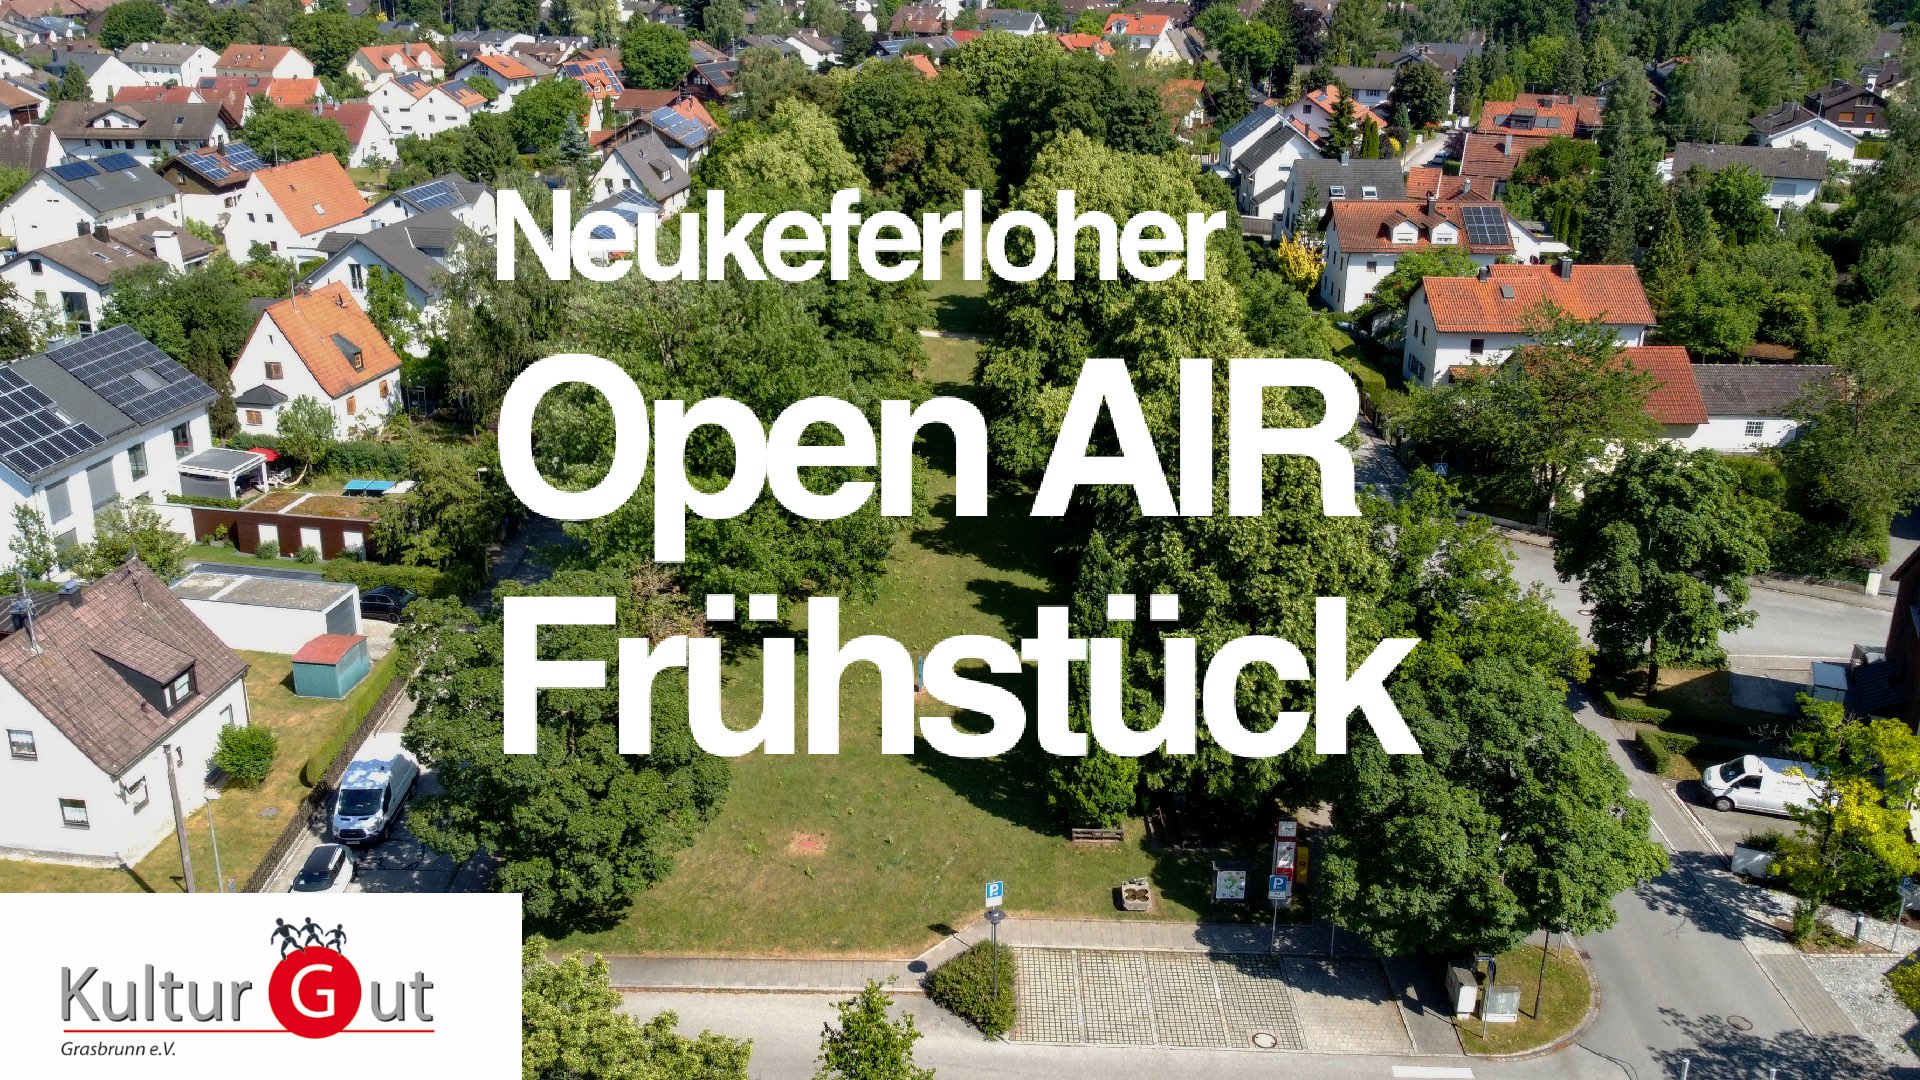 Neukferloher Open Air Frühstück mit KulturGut Grasbrunn